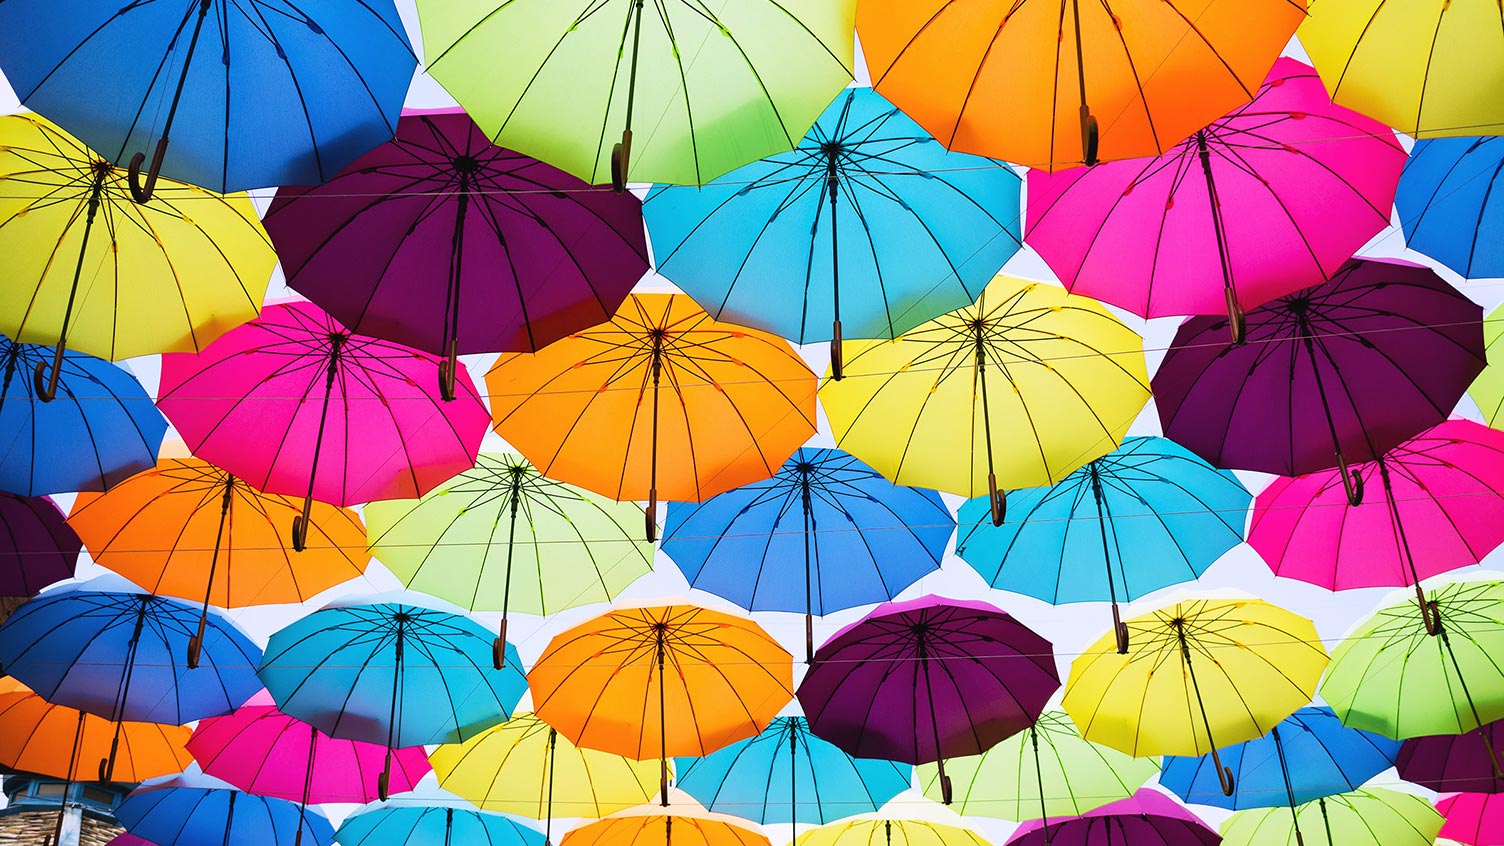 Image de parapluies